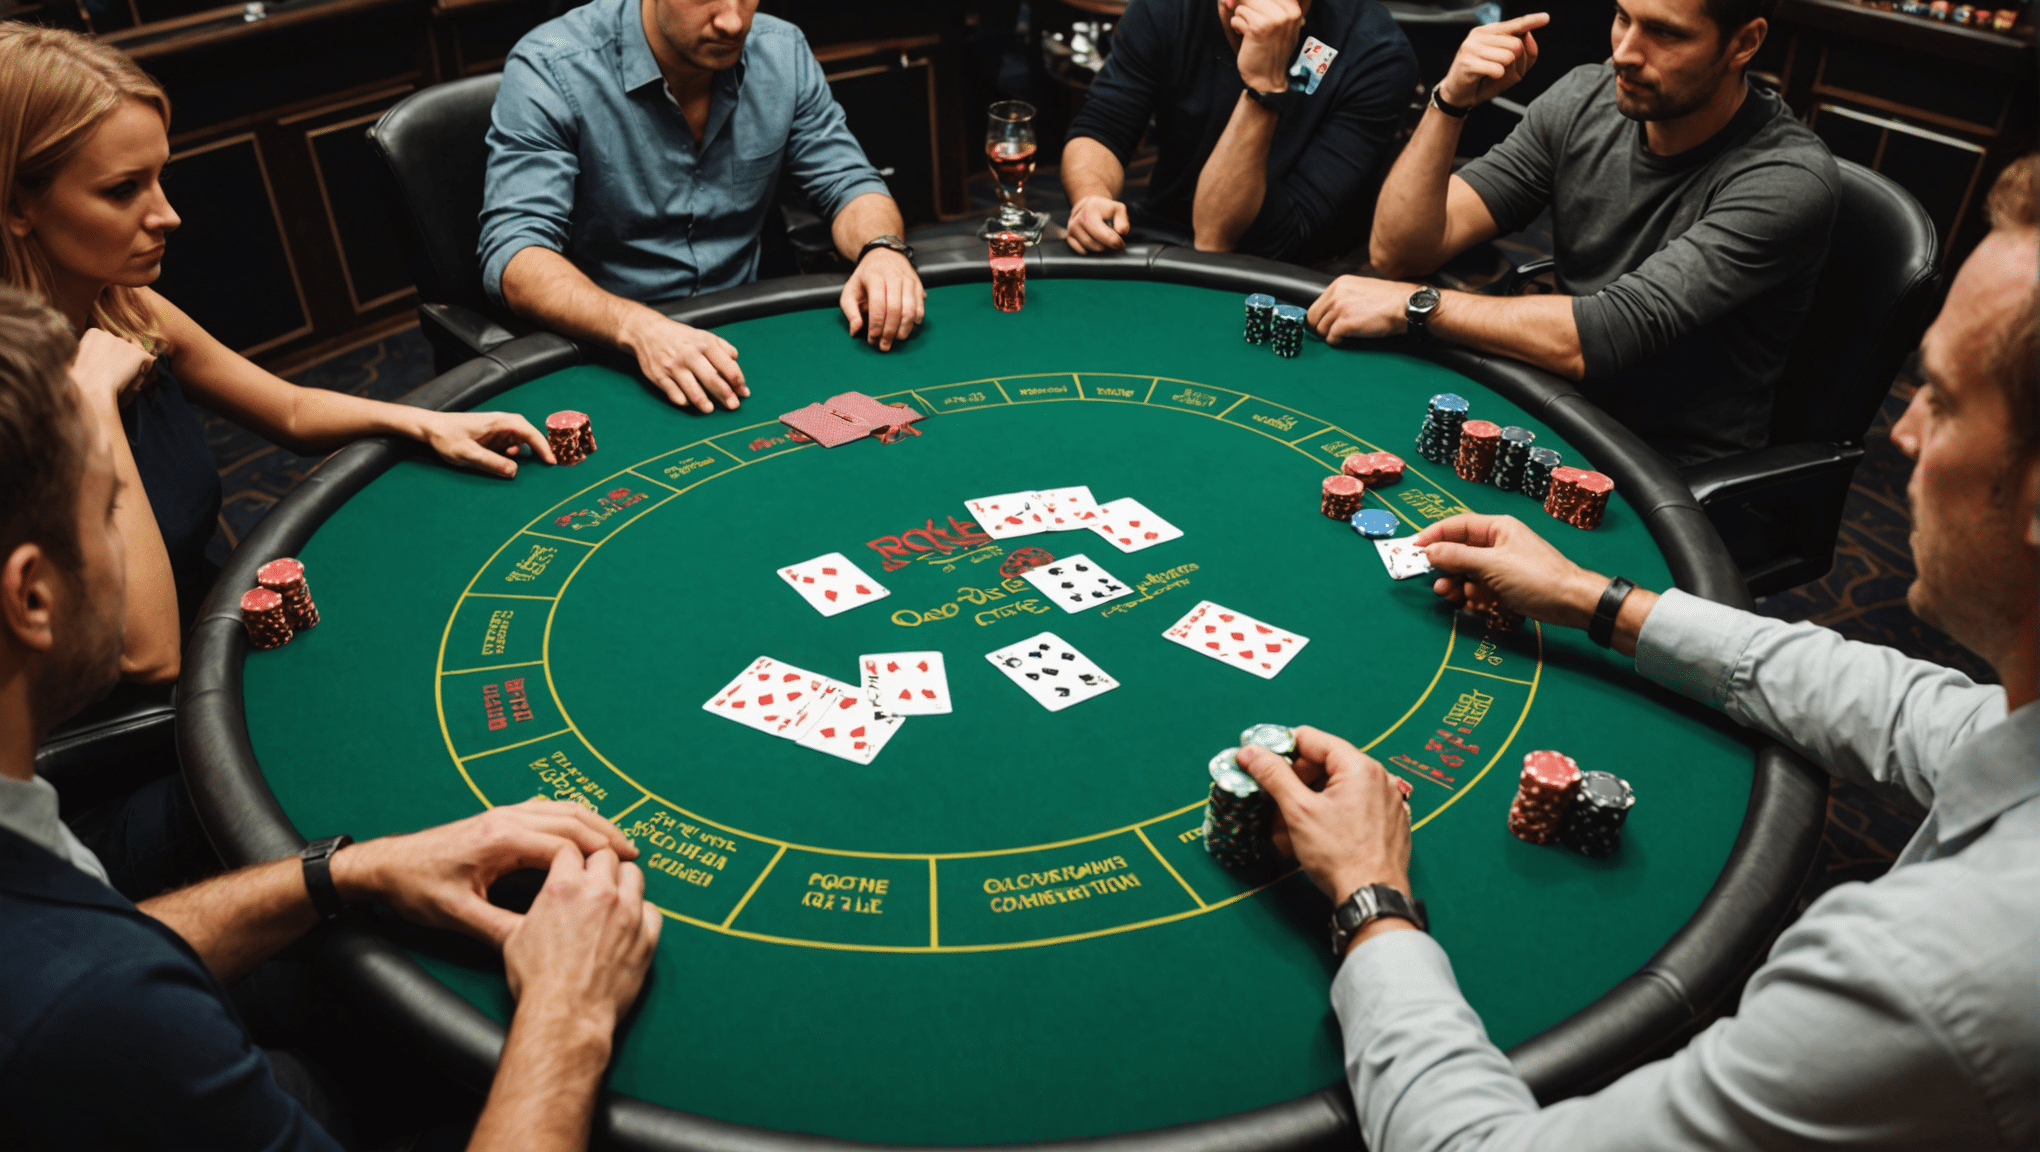 découvrez les différences entre le poker en ligne et le poker en live ainsi que les règles de base du poker dans cet article informatif.